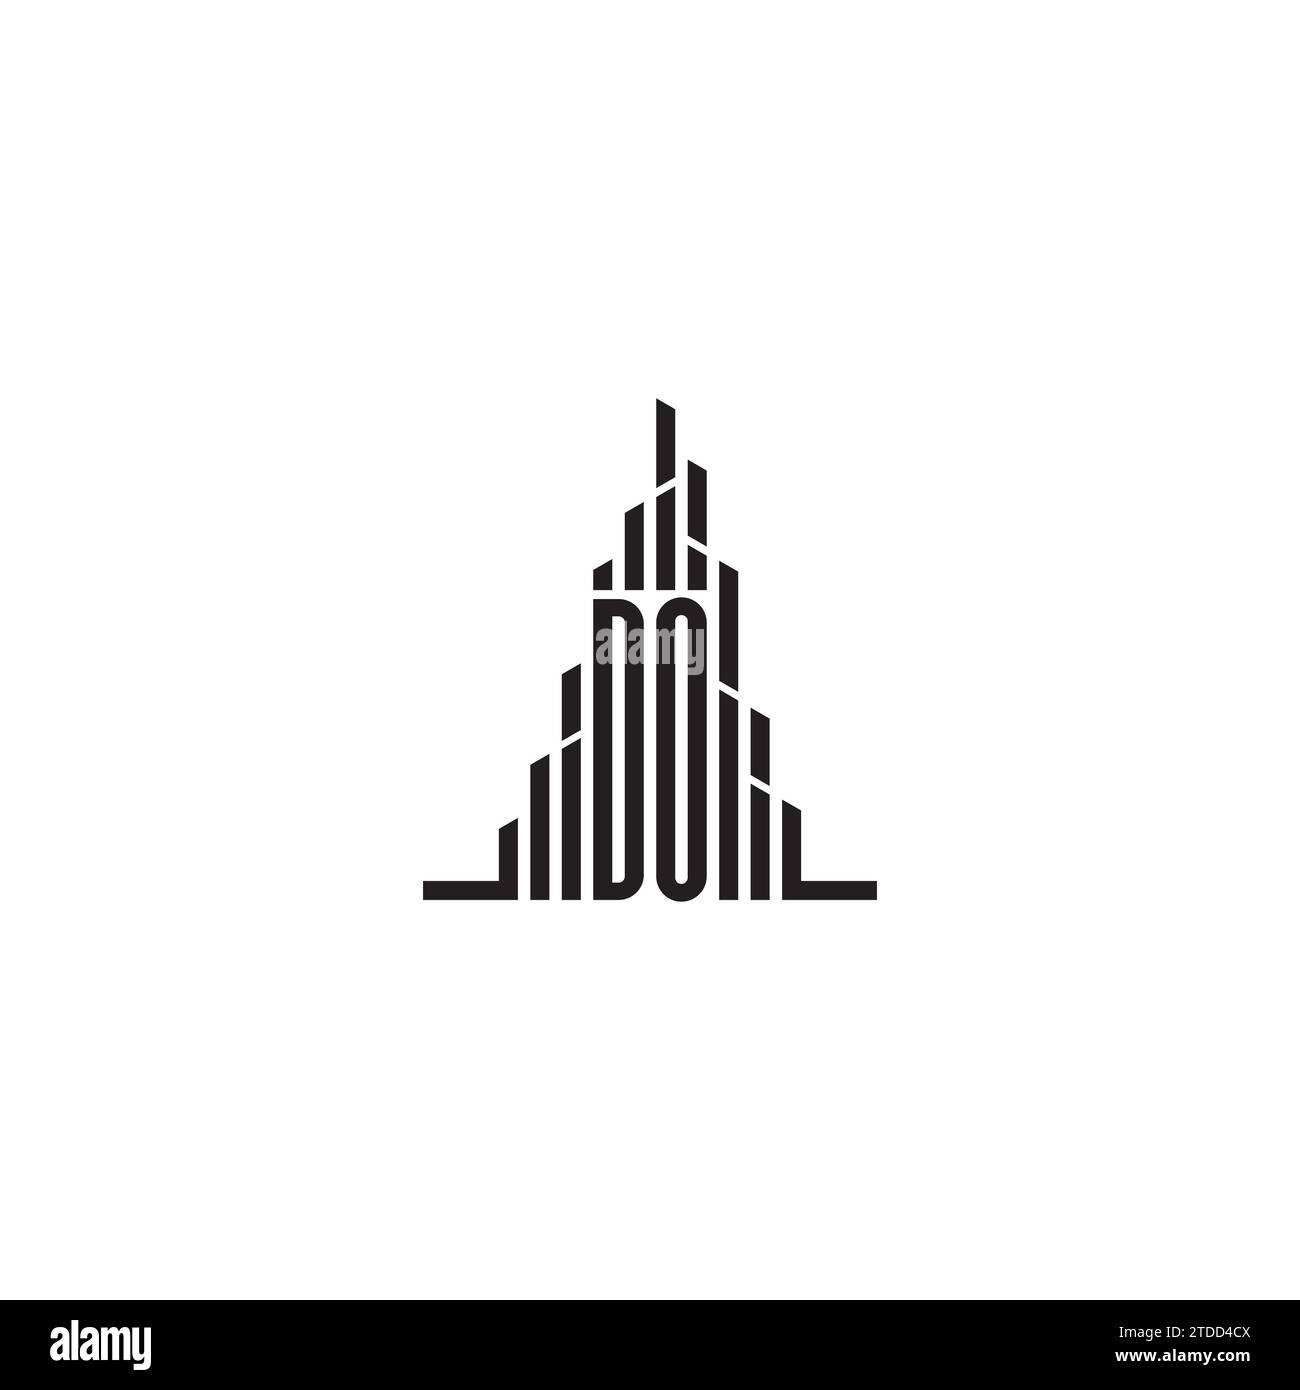 Concezione iniziale del logo grattacielo in un design professionale di alta qualità che si adatta bene a qualsiasi supporto di stampa Illustrazione Vettoriale